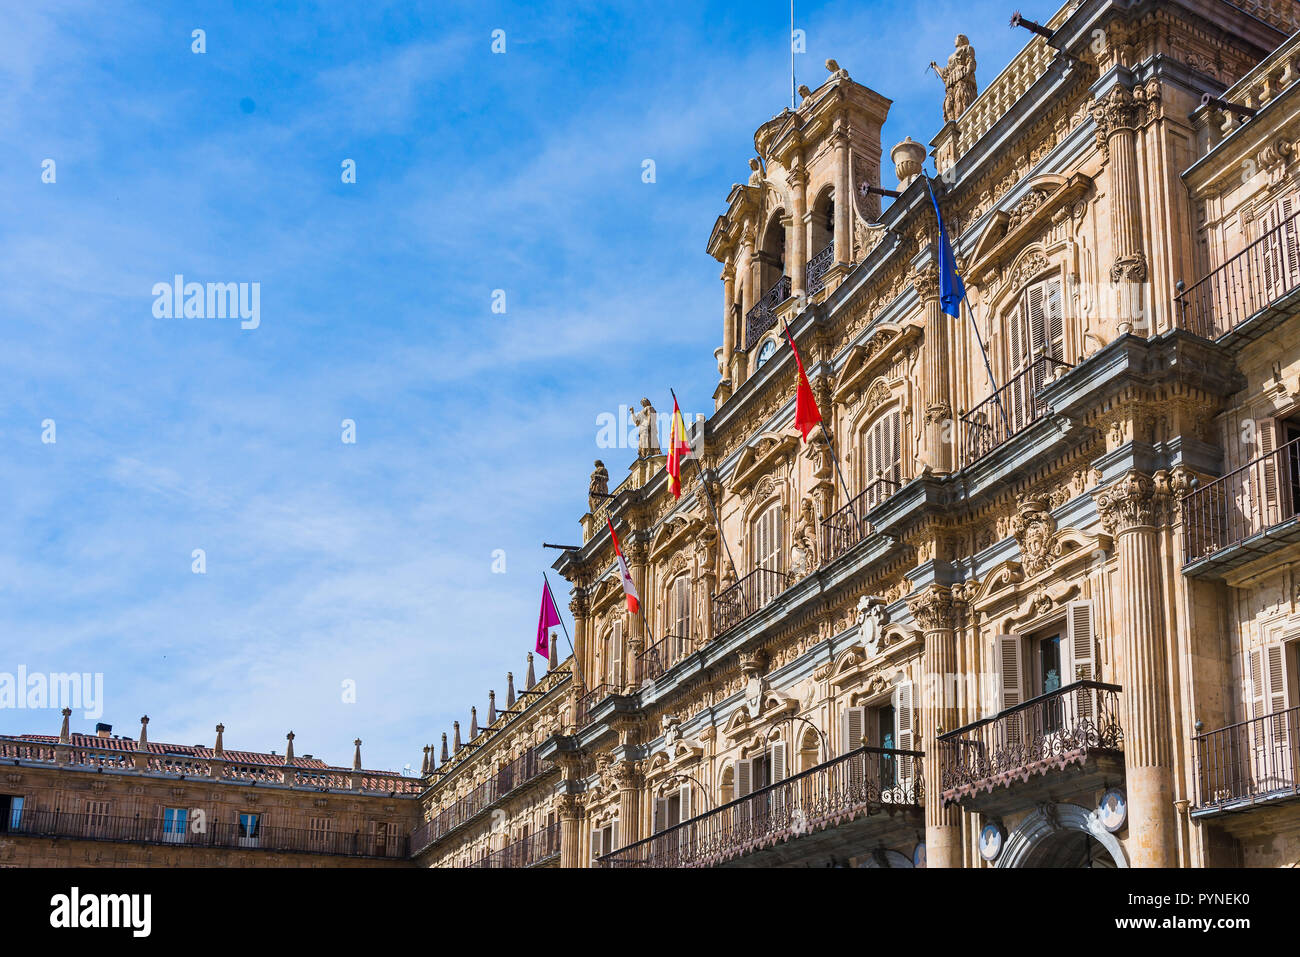 L'hôtel de ville. La Plaza Mayor, la place principale, à Salamanque, a été construit dans le style baroque espagnol. Salamanque, Castille et Leon, Espagne, Euro Banque D'Images